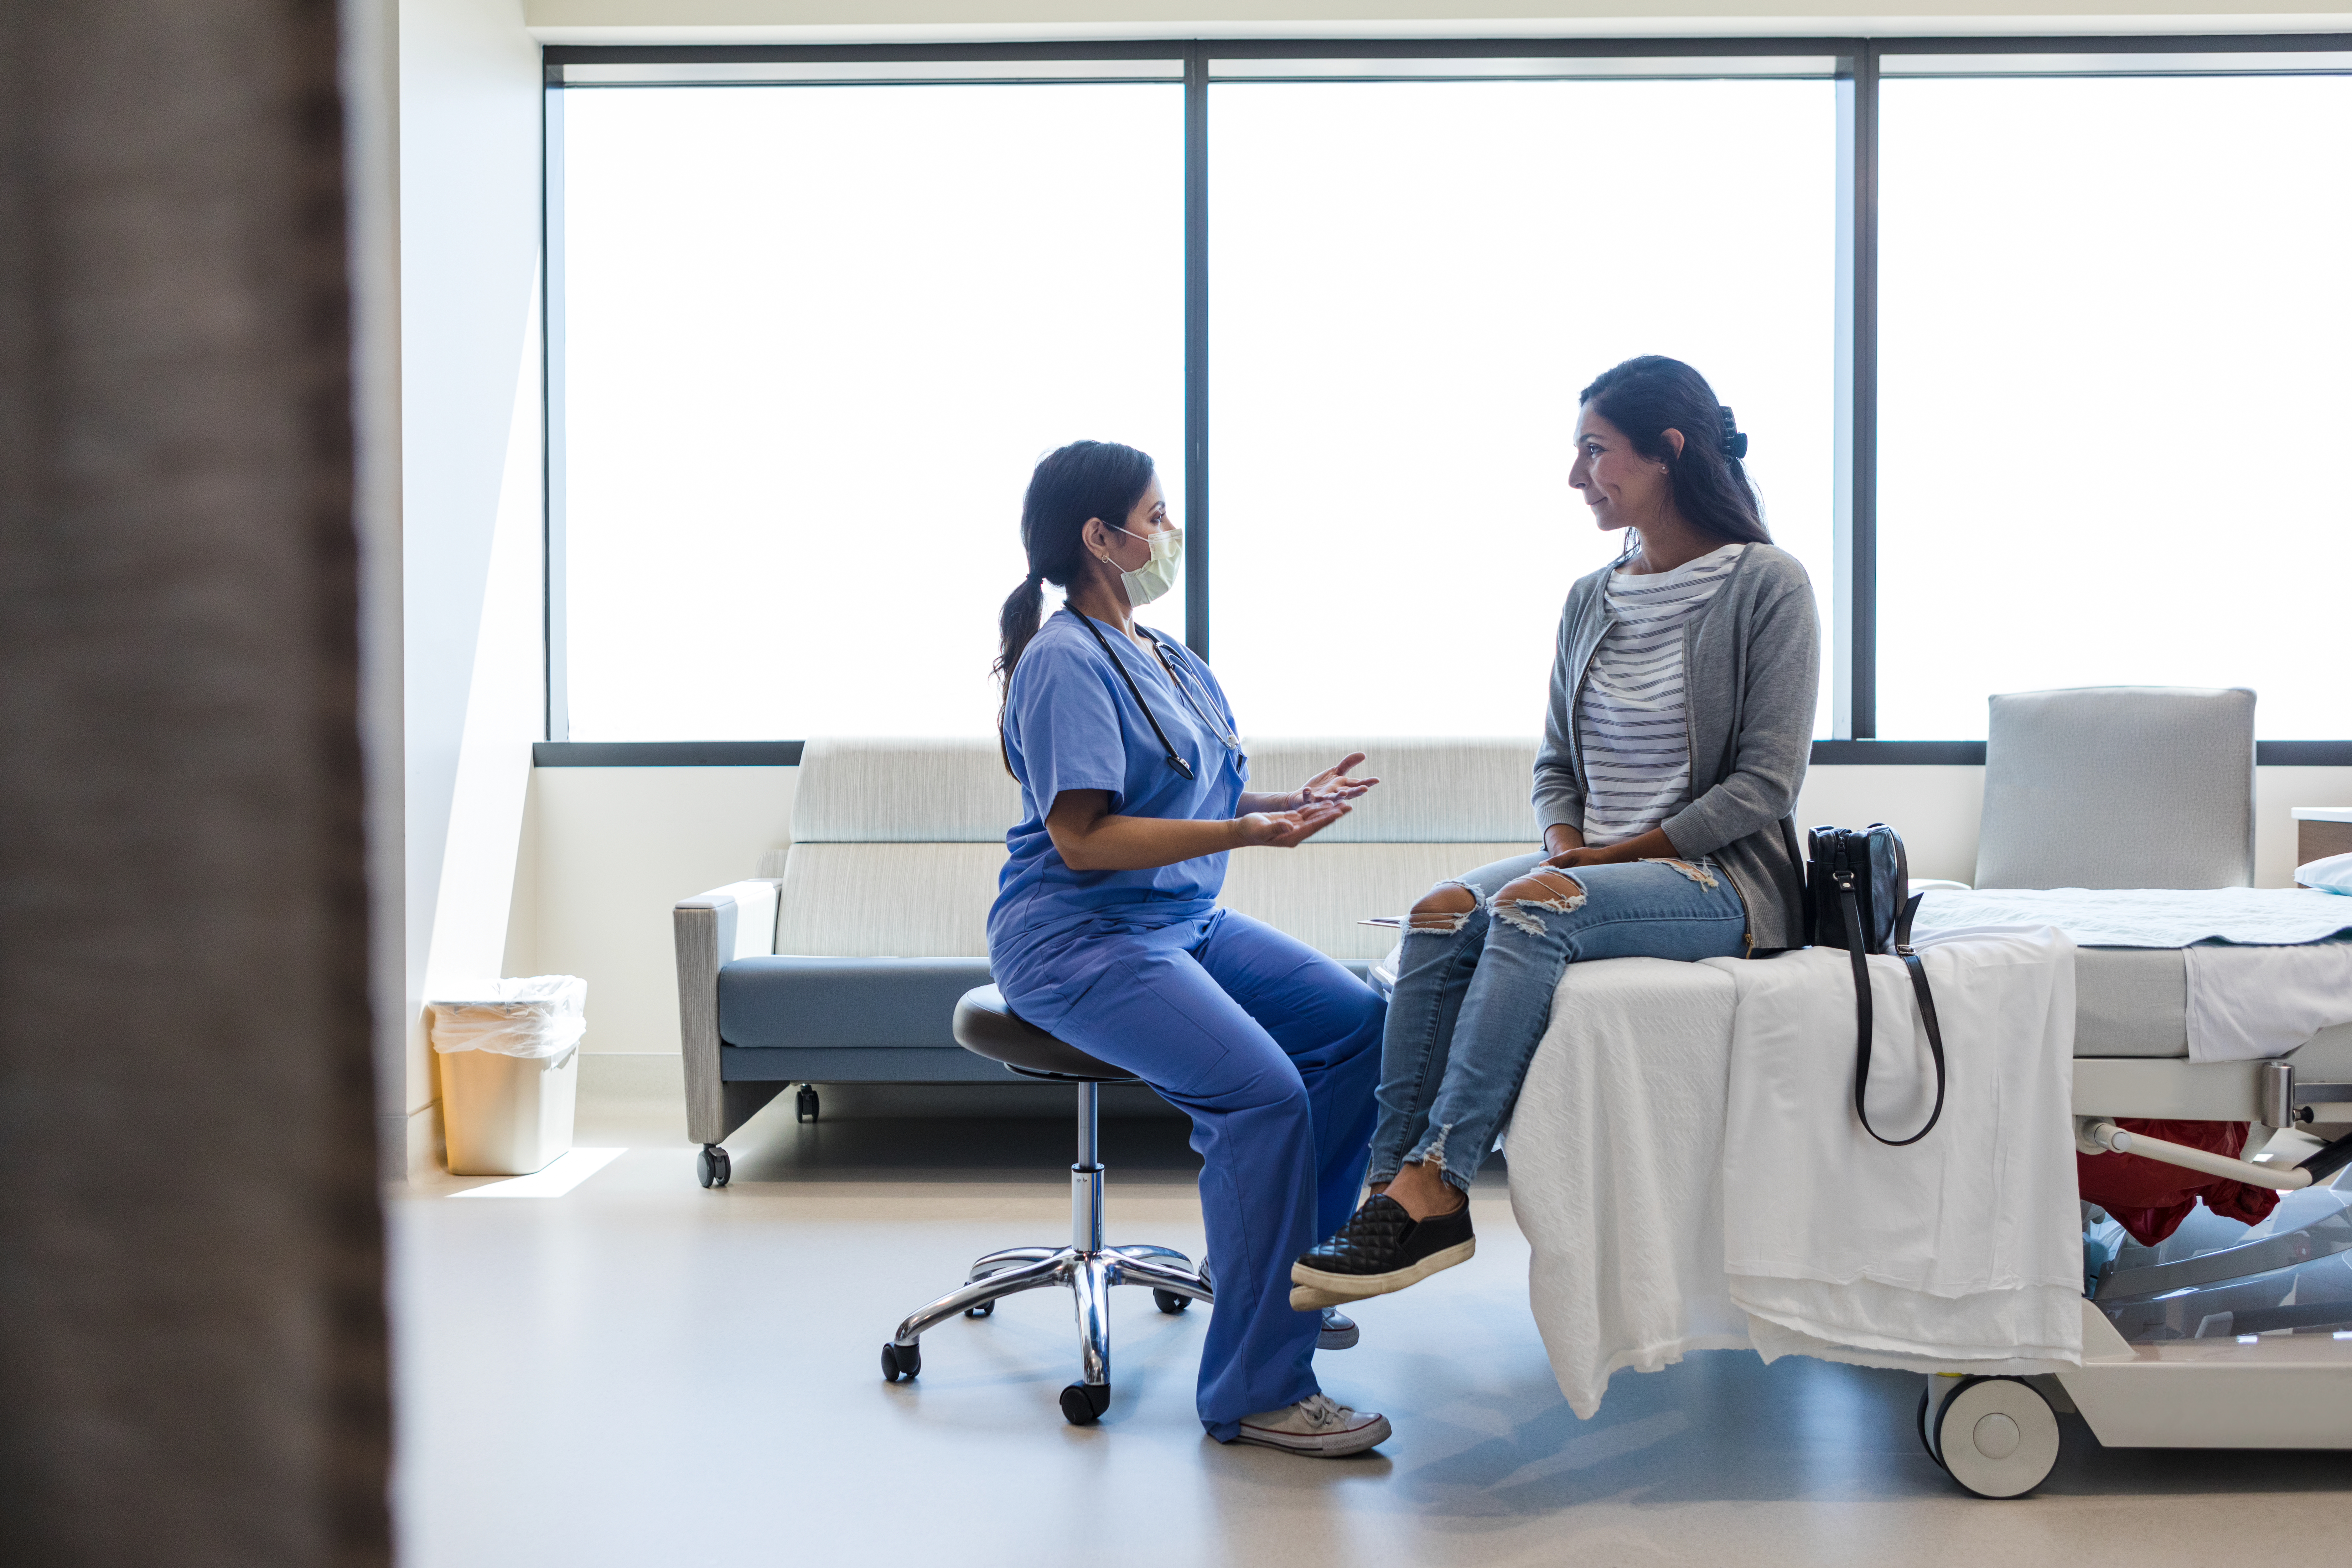 Eine Frau im OP-Anzug im Gespräch mit ihrem Patienten | Quelle: Getty Images